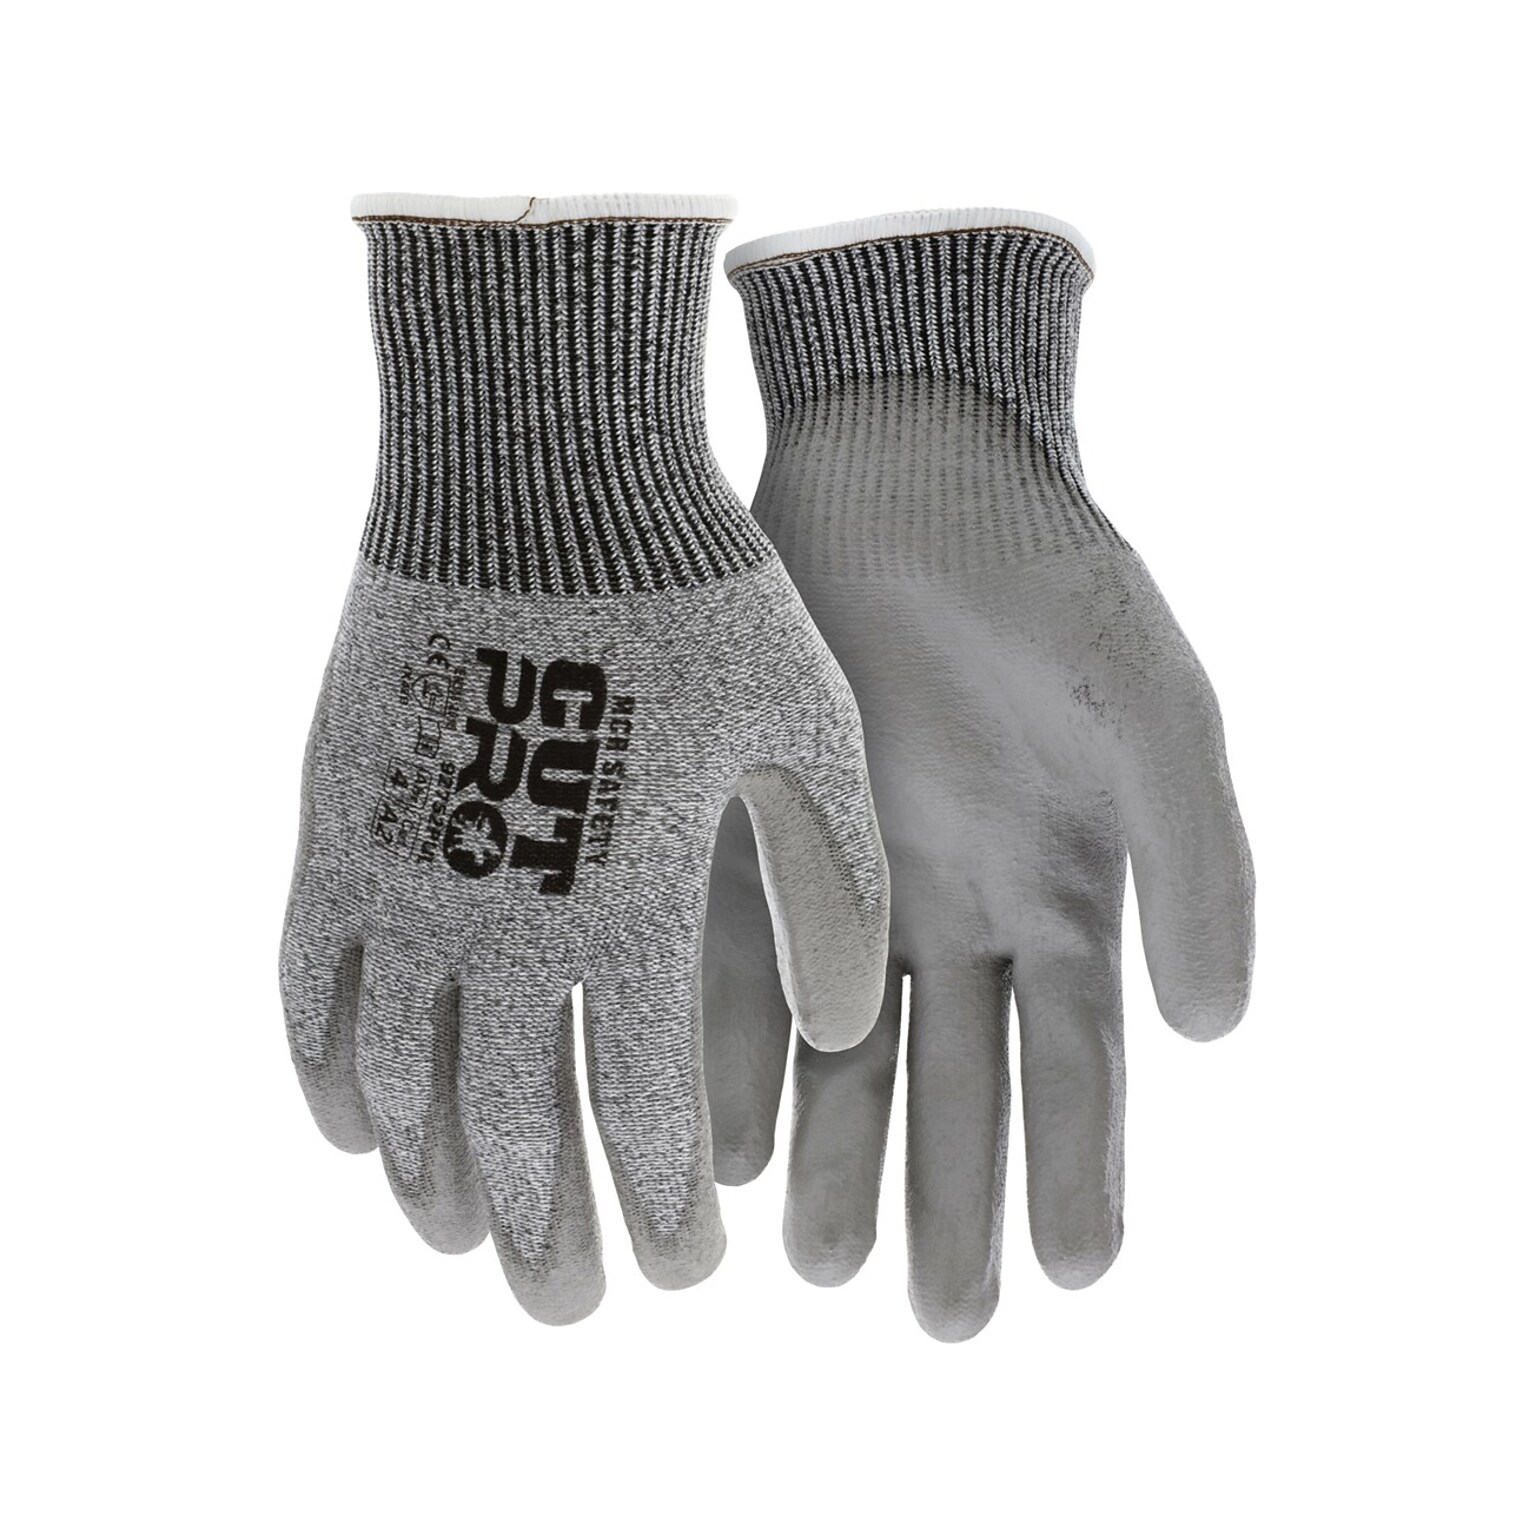 MCR Safety Cut Pro Hypermax Fiber/Polyurethane Work Gloves, XS, A2 Cut Level, Salt-and-Pepper/Gray, Dozen (92752PUXS)